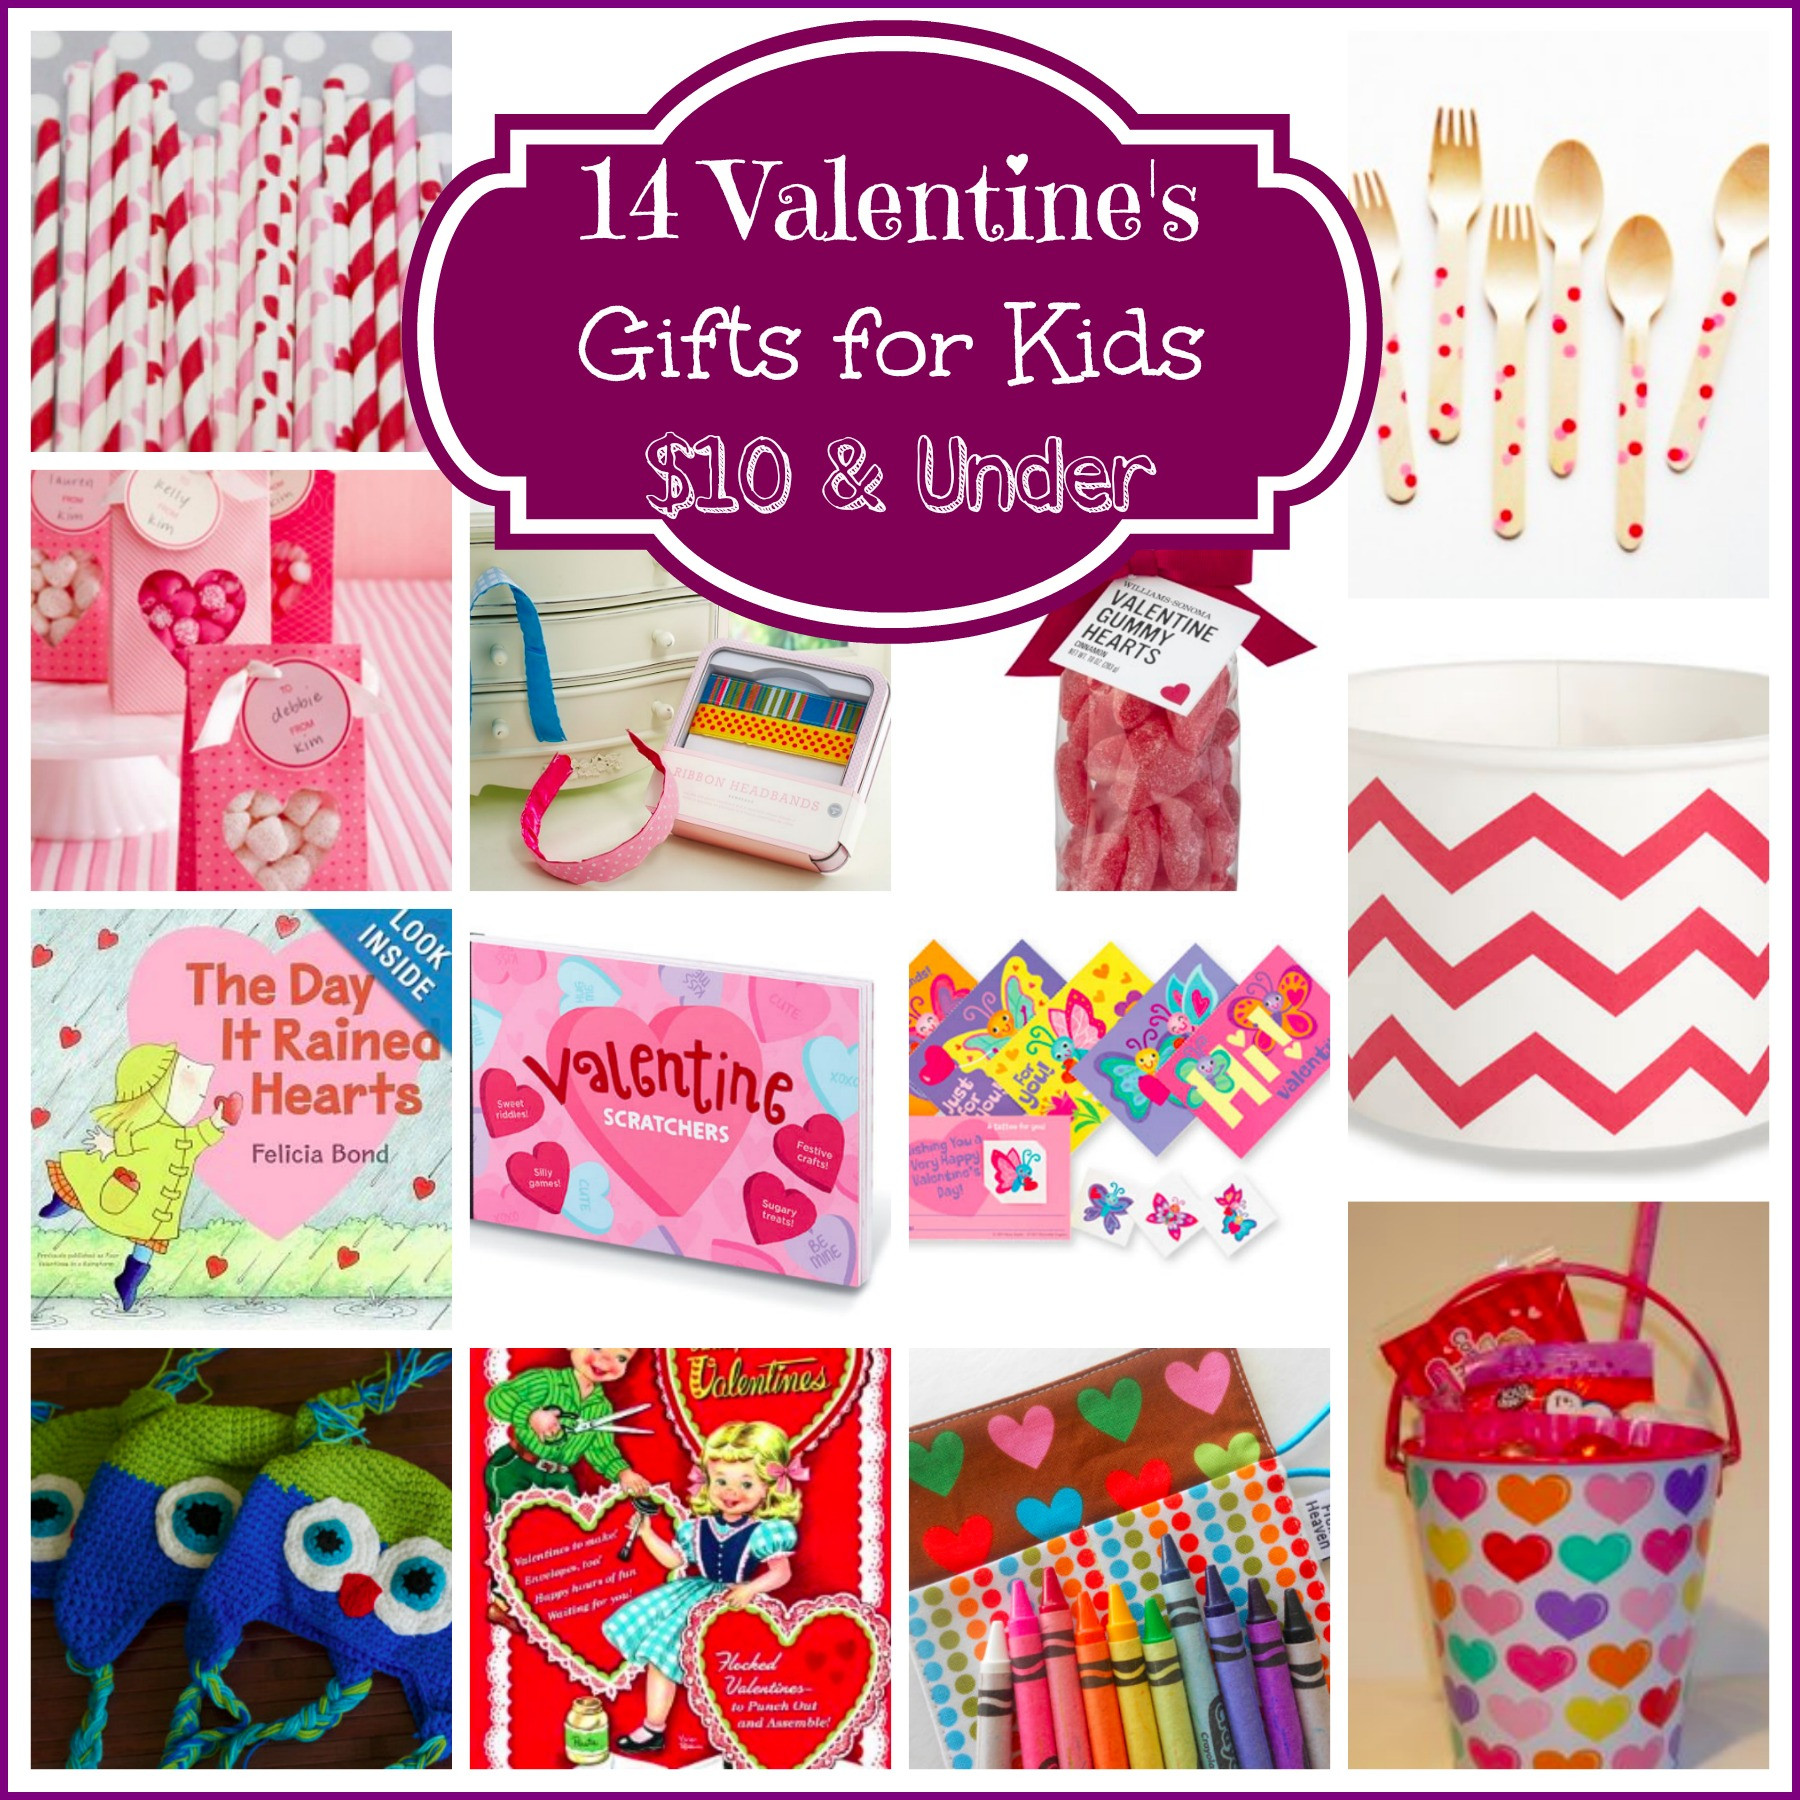 Toddler Valentine Gift Ideas
 14 Valentine’s Day Gifts for Kids $10 & Under